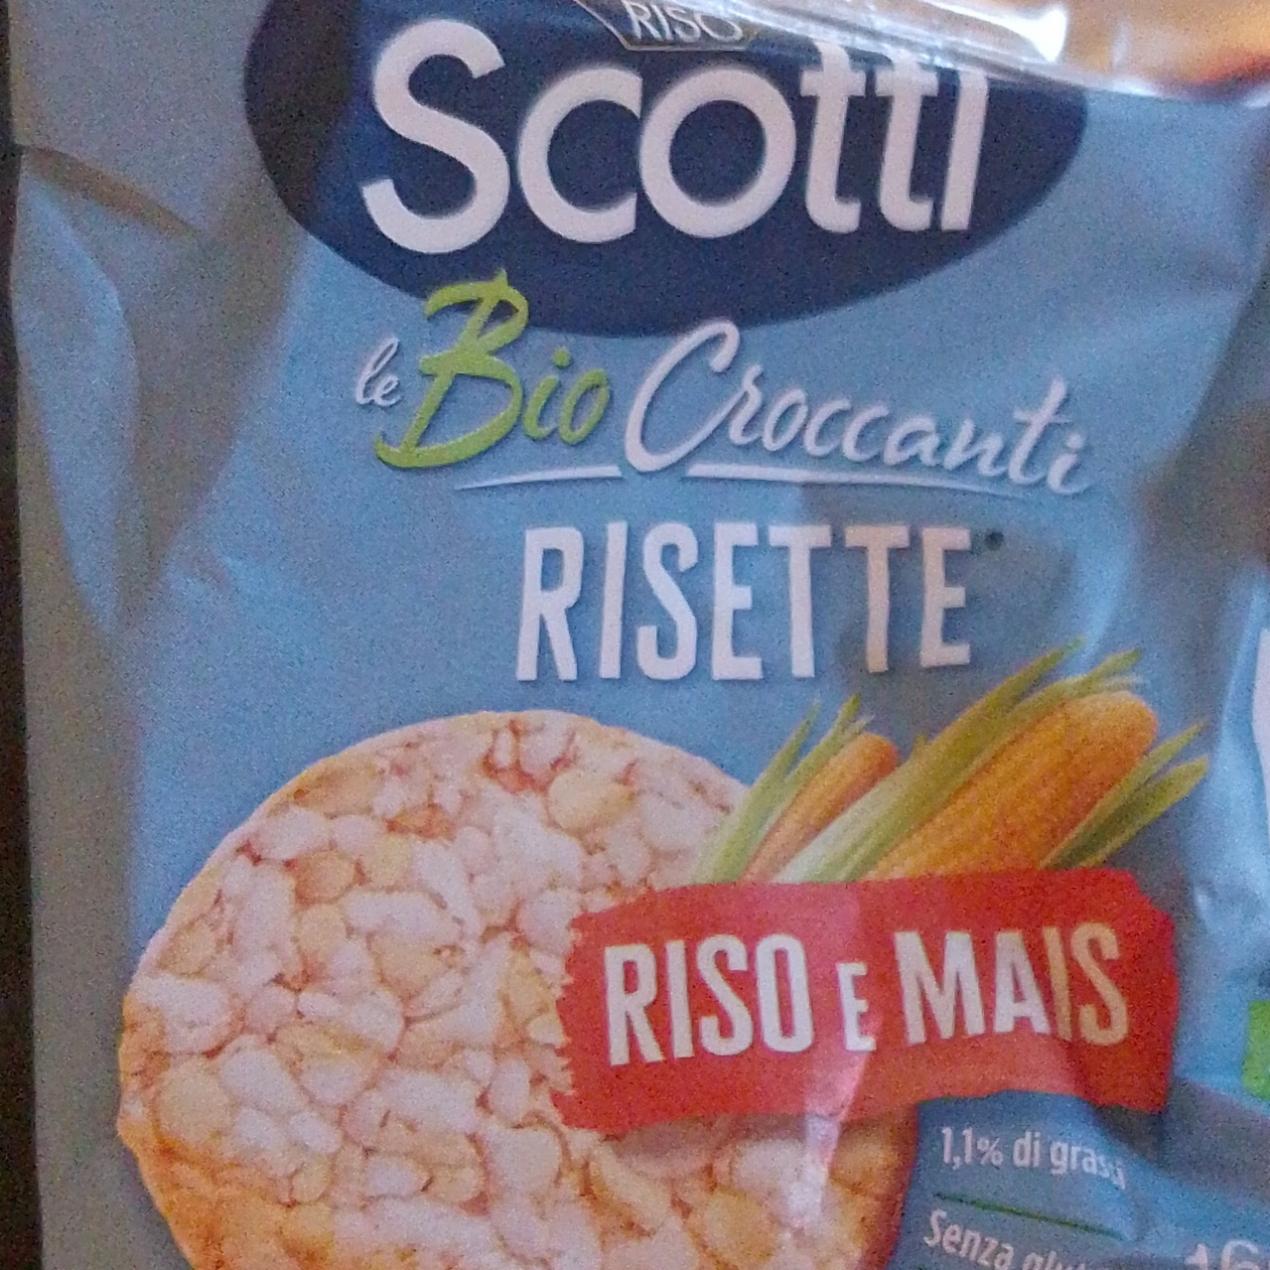 Fotografie - Le Bio Croccanti Risette Riso e Mais Riso Scotti